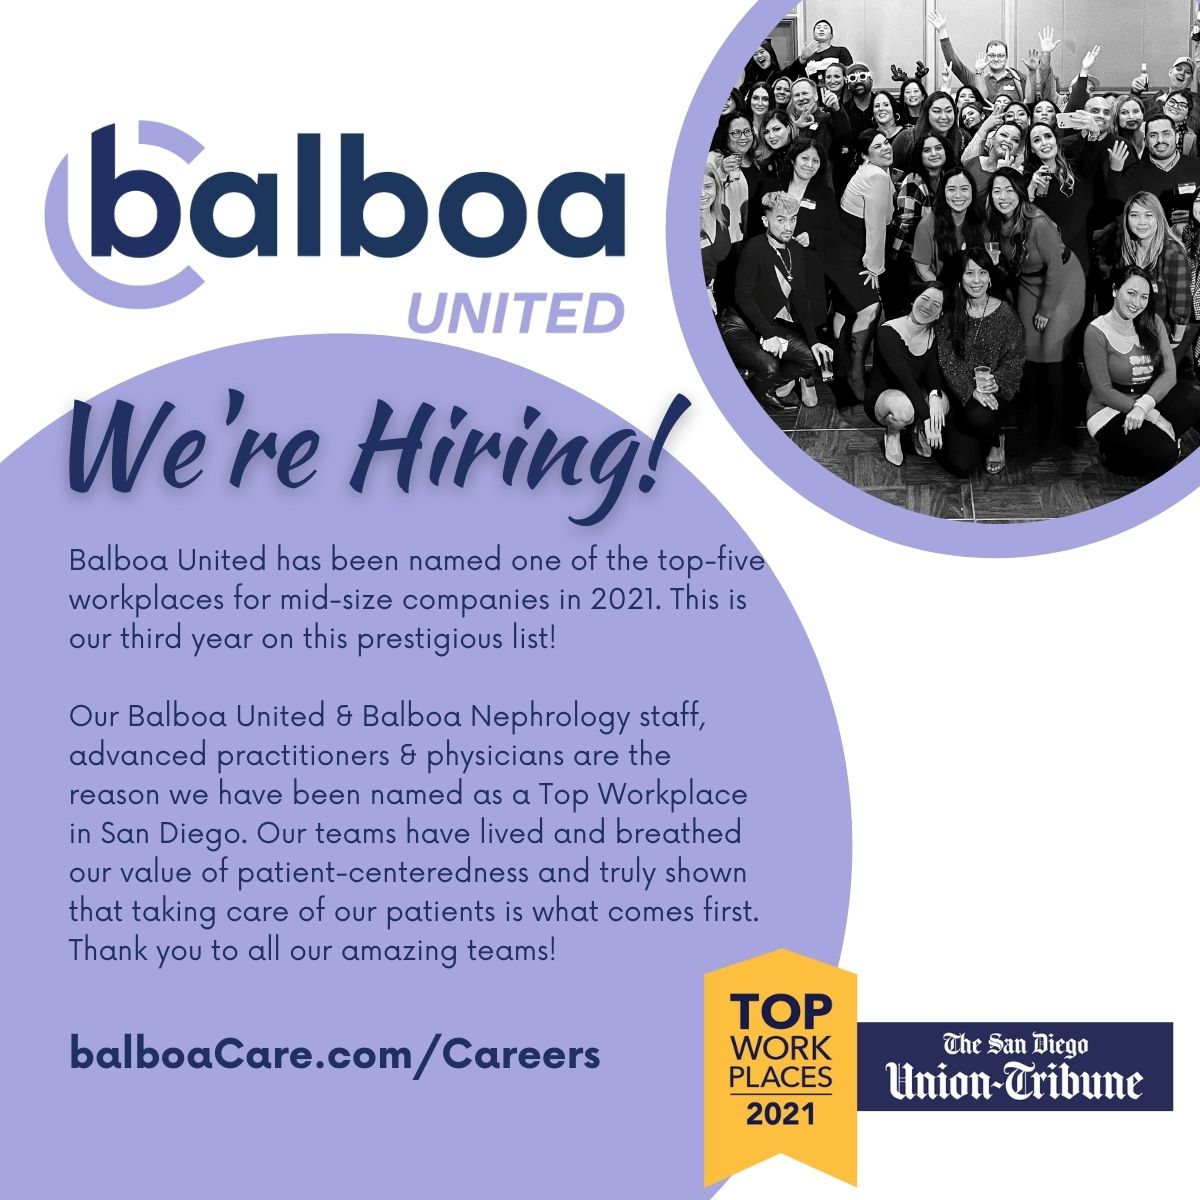 balboa united_hiring.jpg